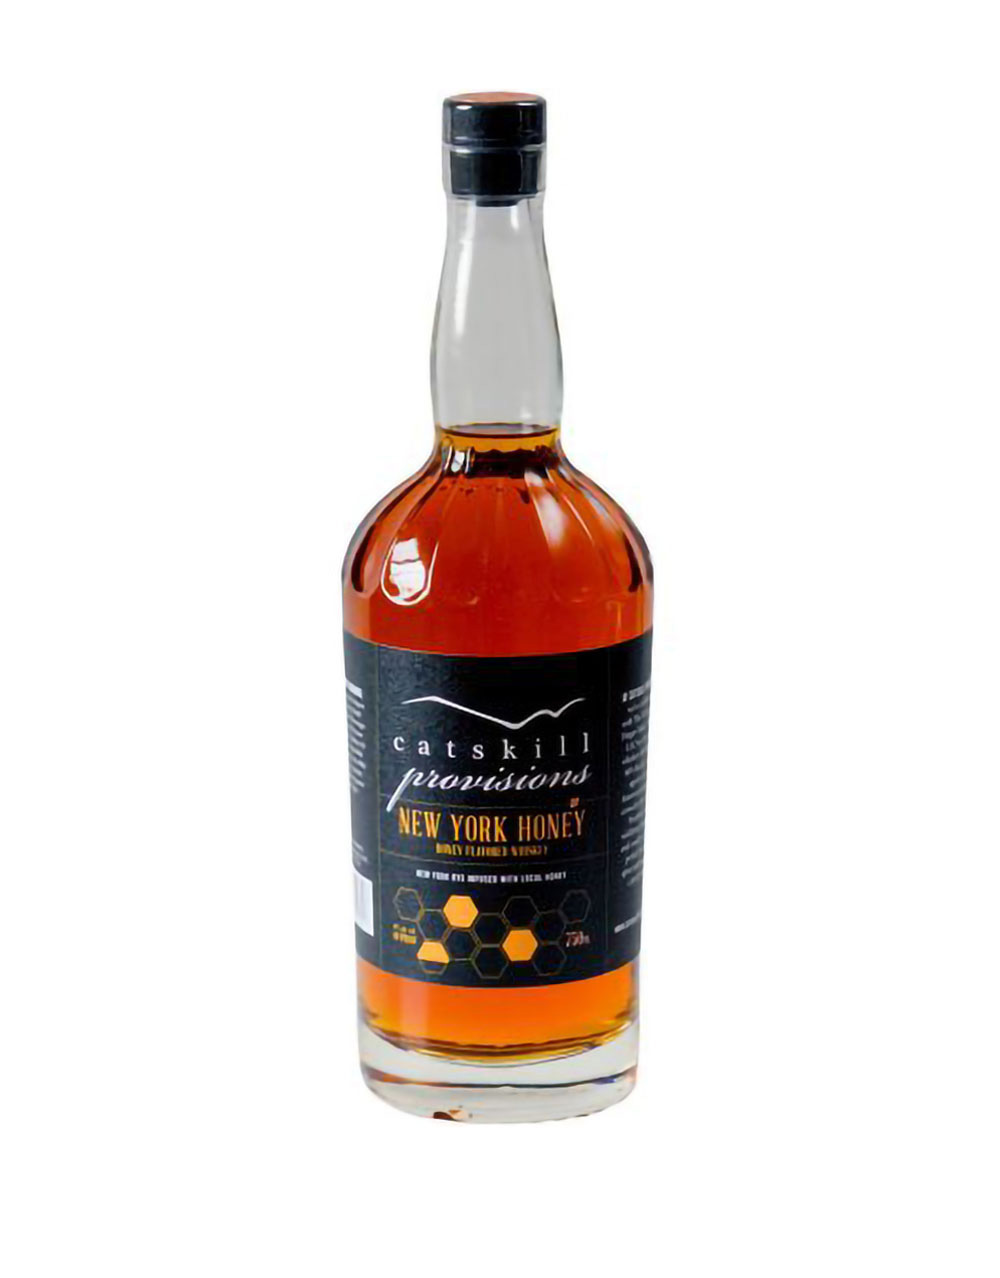 Catskill Provisions New York Honey Whiskey